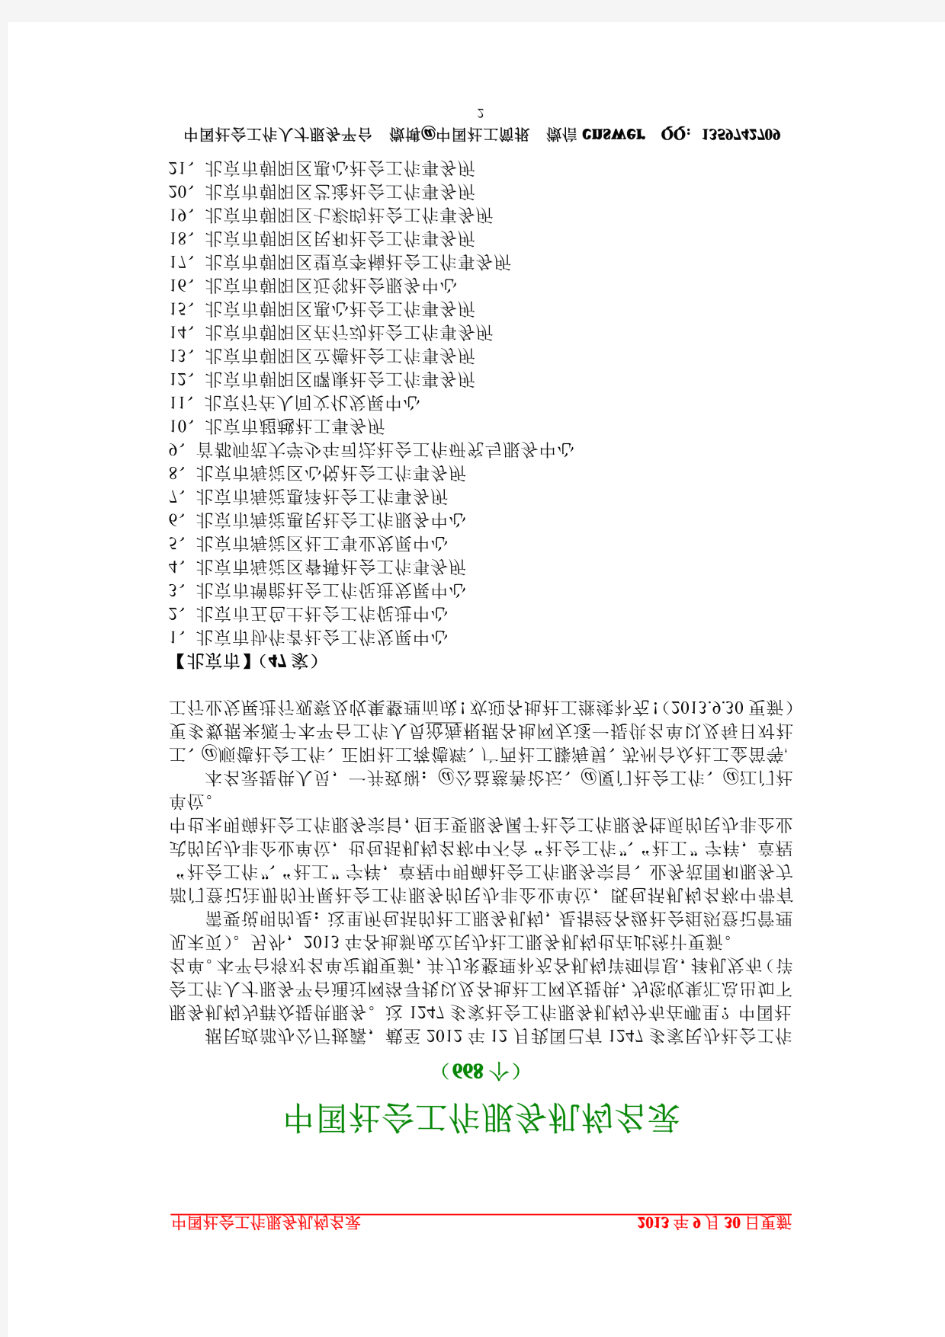 《中国社会工作服务机构名录(668个)》(2013.9.30更新版本)